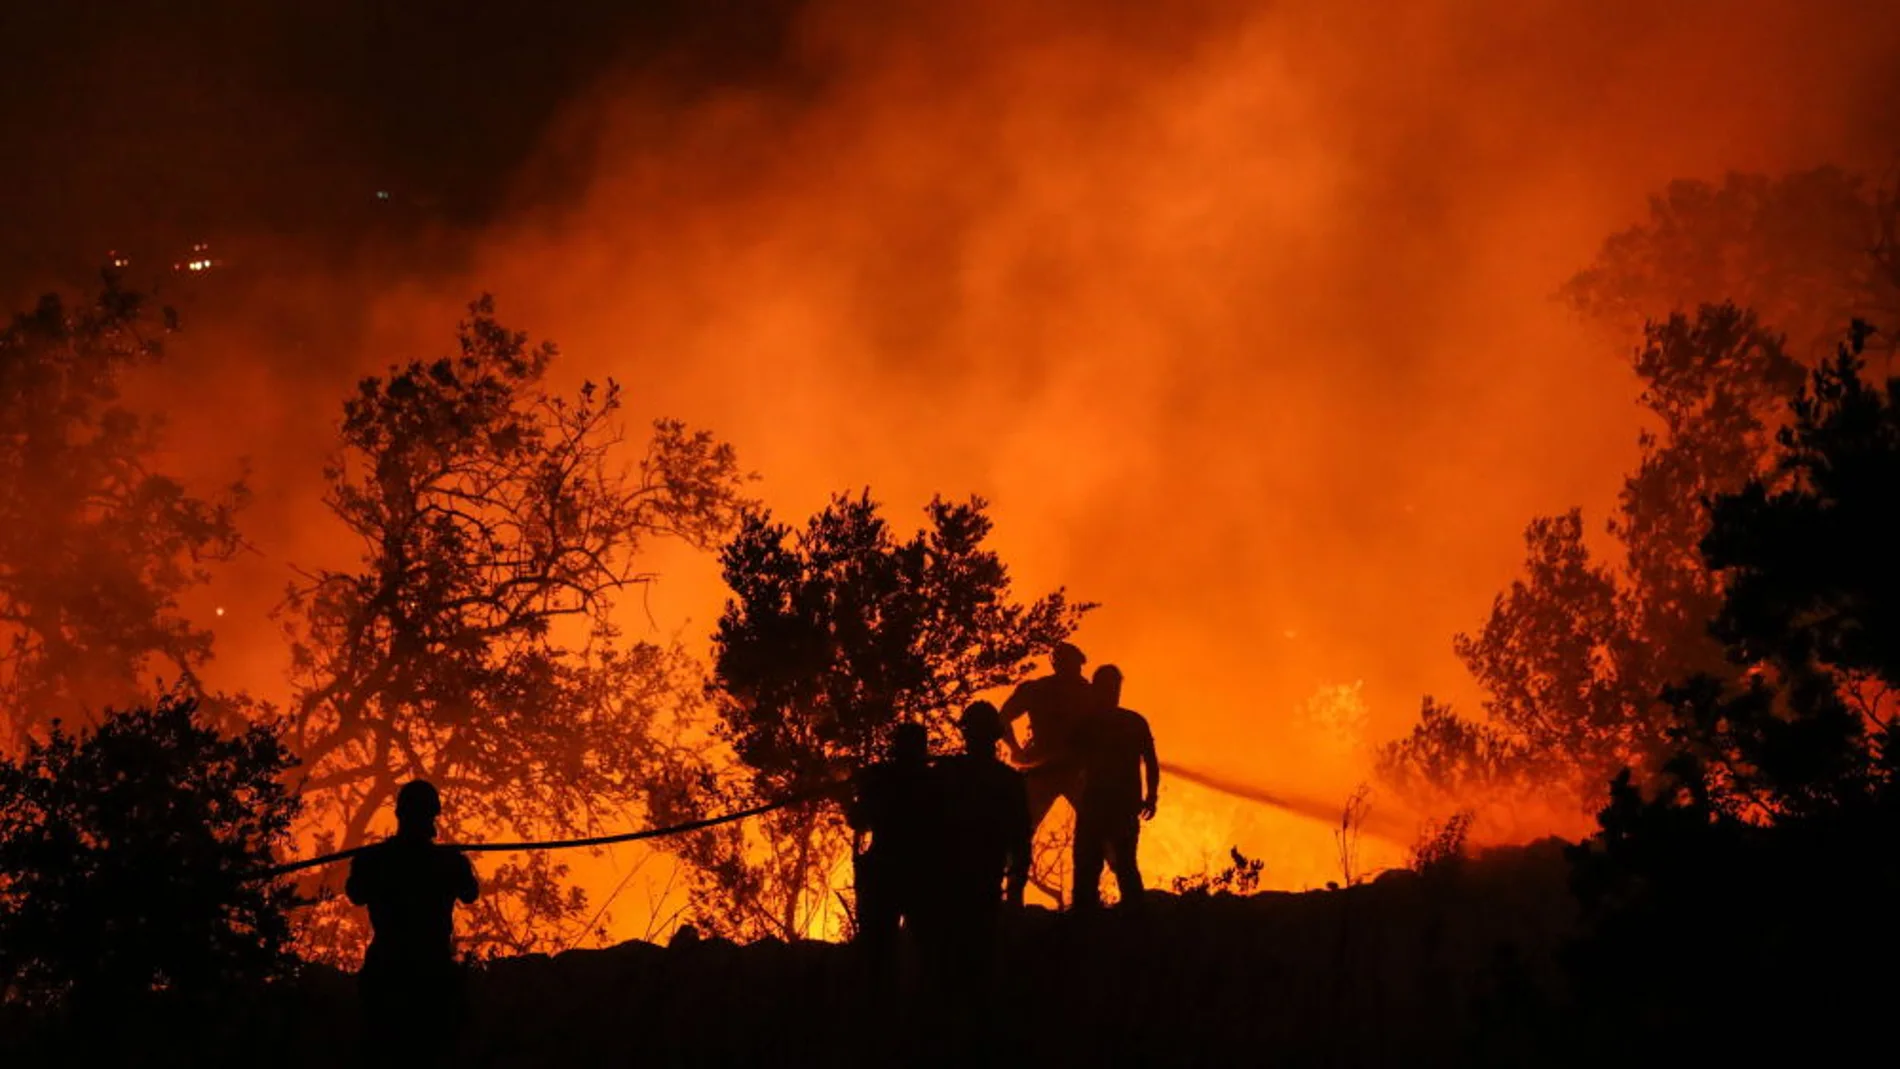 Noticias 1 Antena 3 (09-08-18) Los bomberos dan por estabilizado el incendio de Llutxent (Valencia)